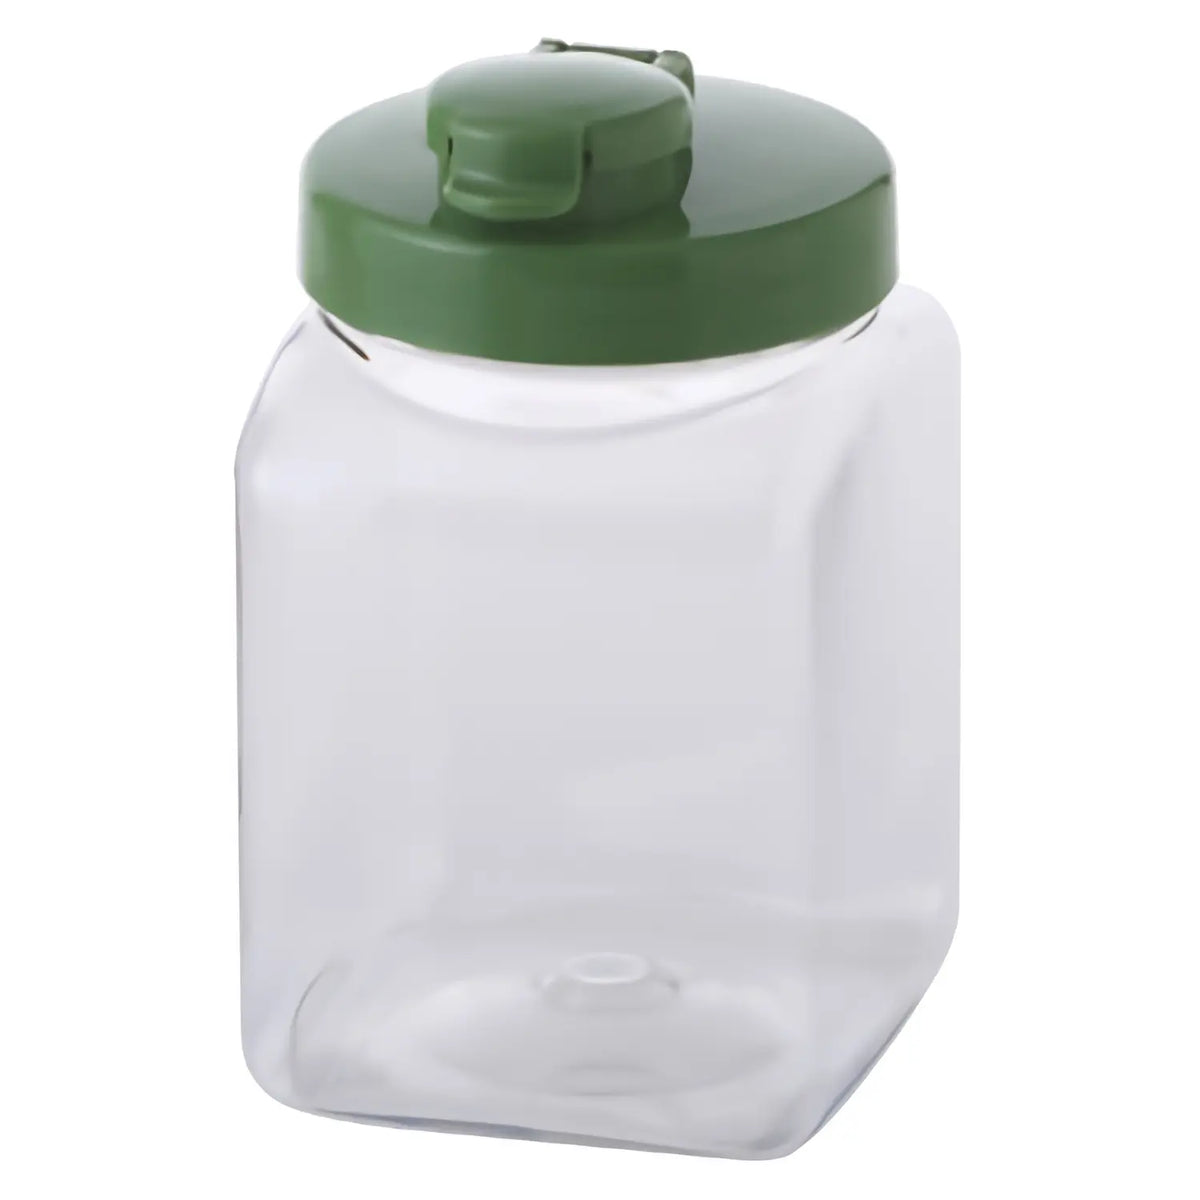 TAKEYA Polyethylene Terephthalate Sealed Square Fruit Liquor Bottle